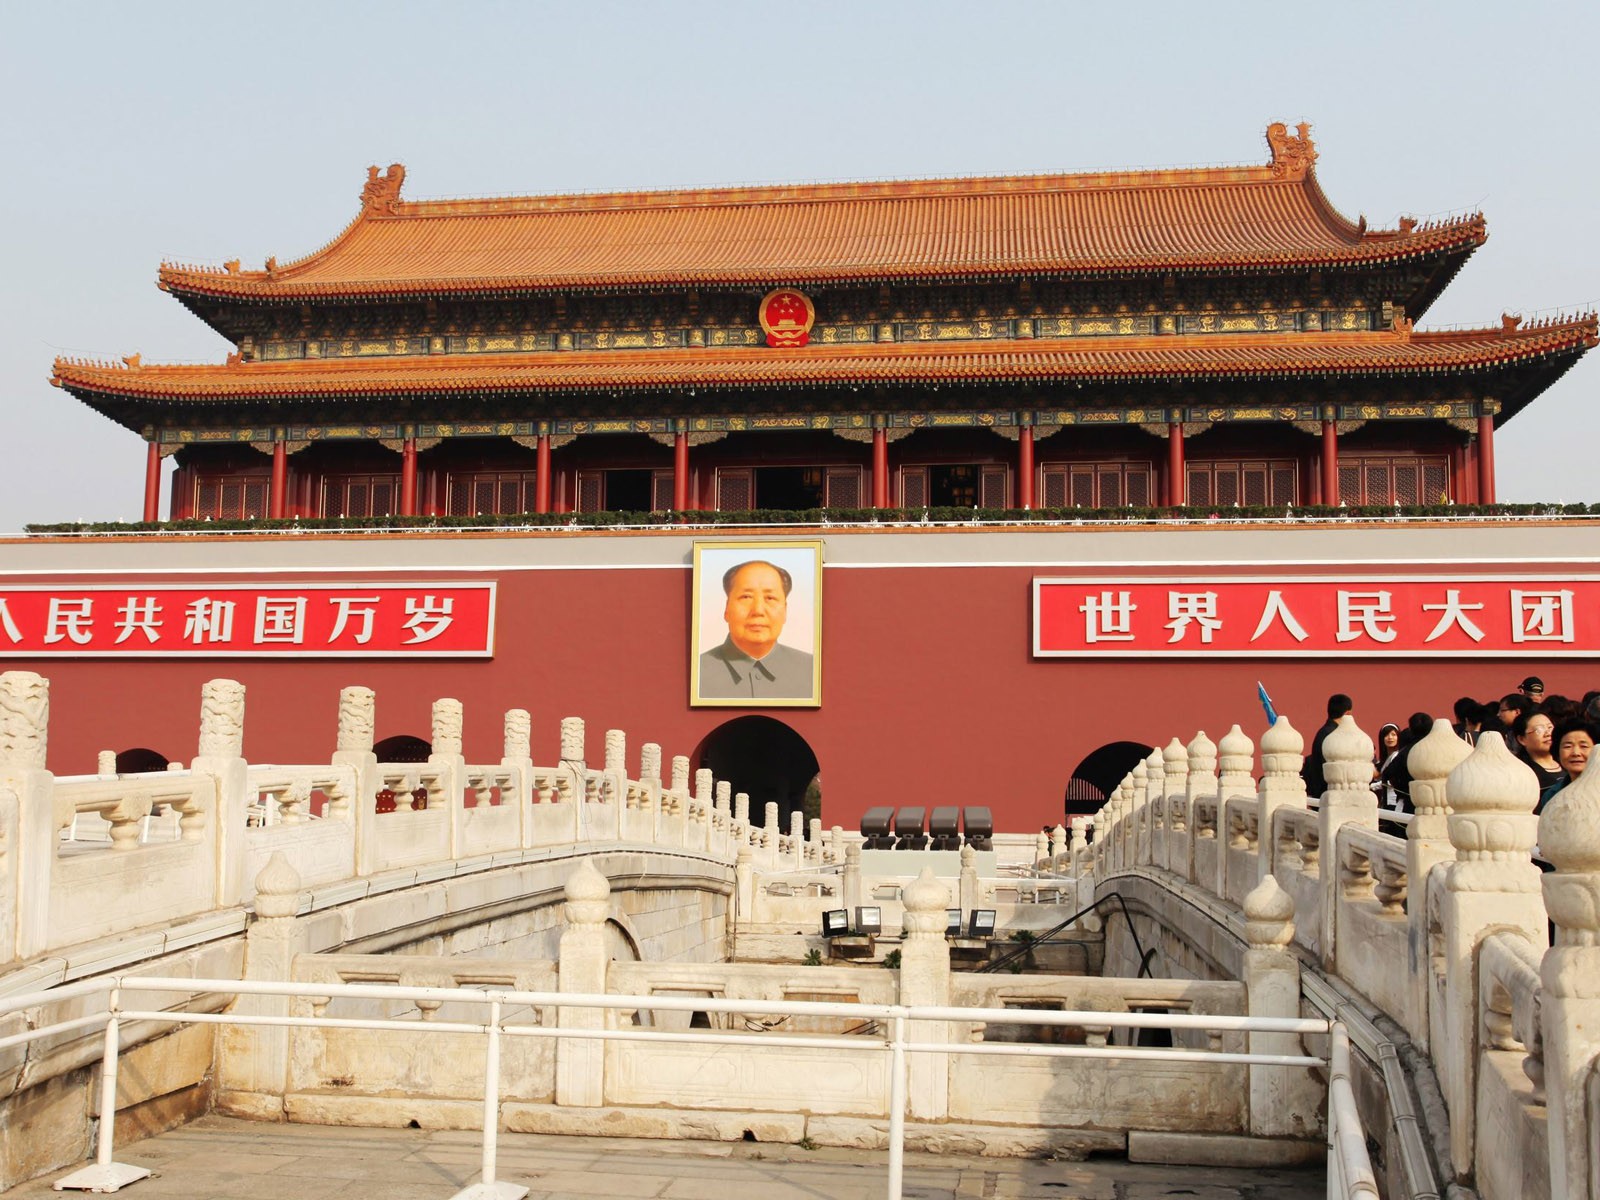 Tour Beijing - Platz des Himmlischen Friedens (GGC Werke) #1 - 1600x1200